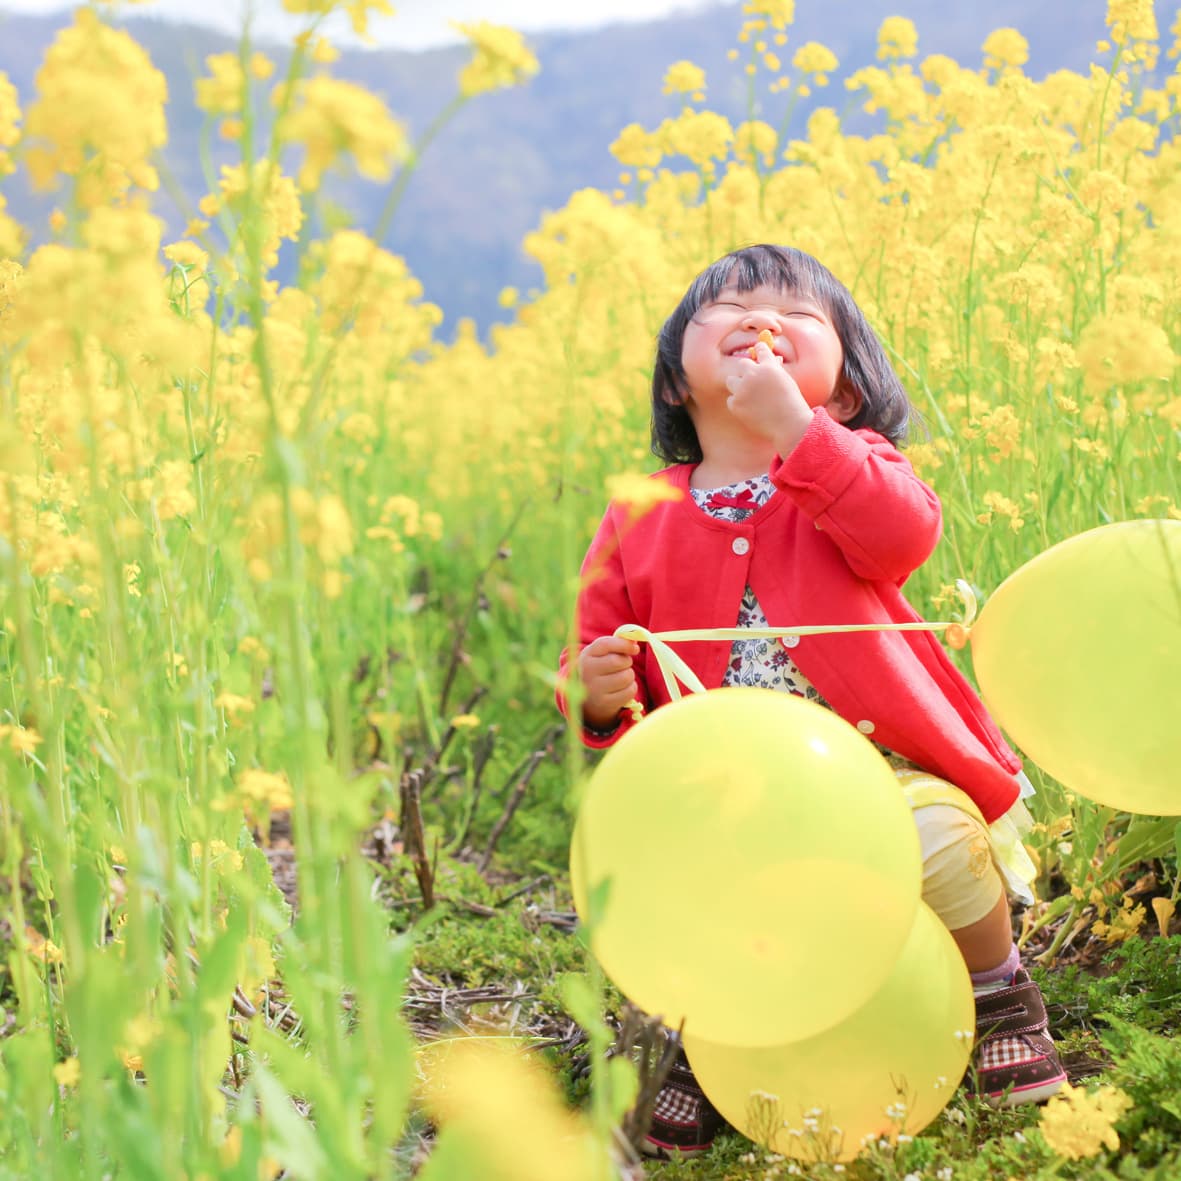 福井の菜の花畑でとった子供のかわいい写真